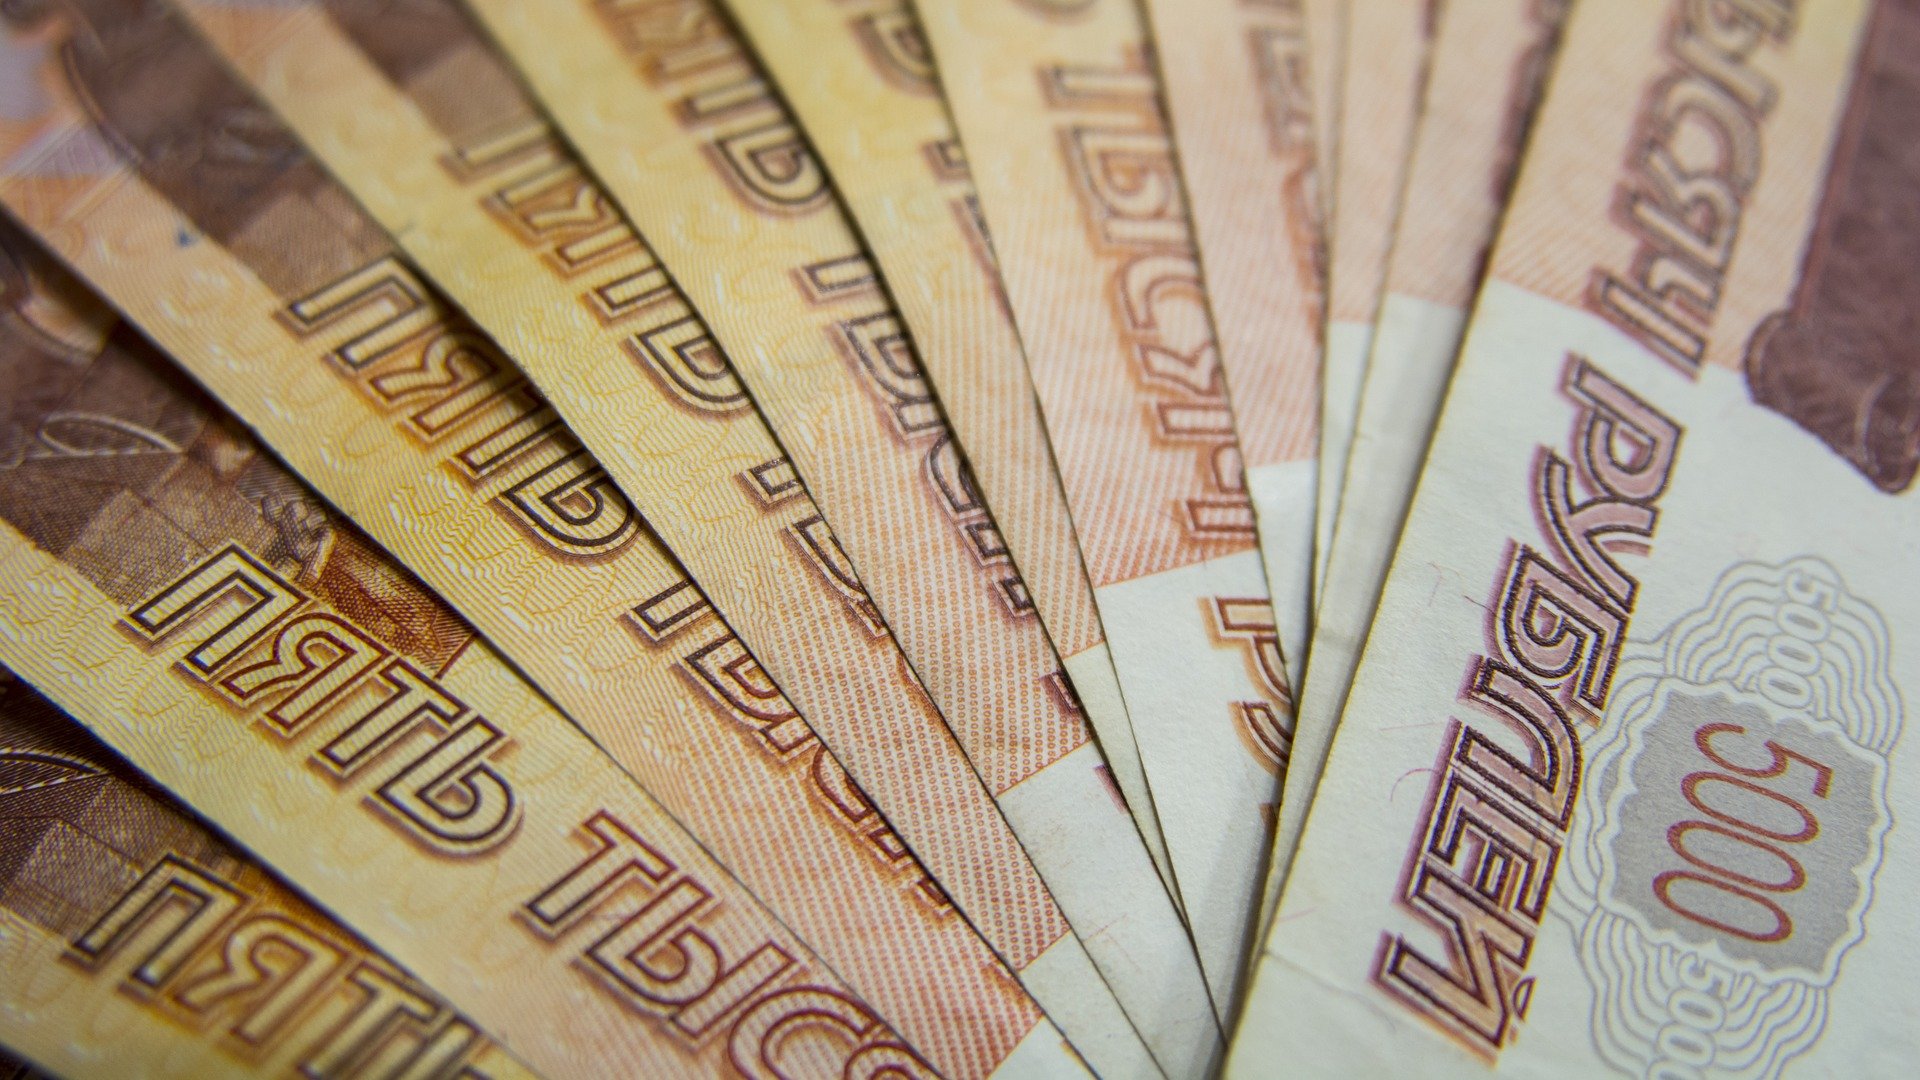 Вероятное введение санкций против РФ мешает росту курса рубля